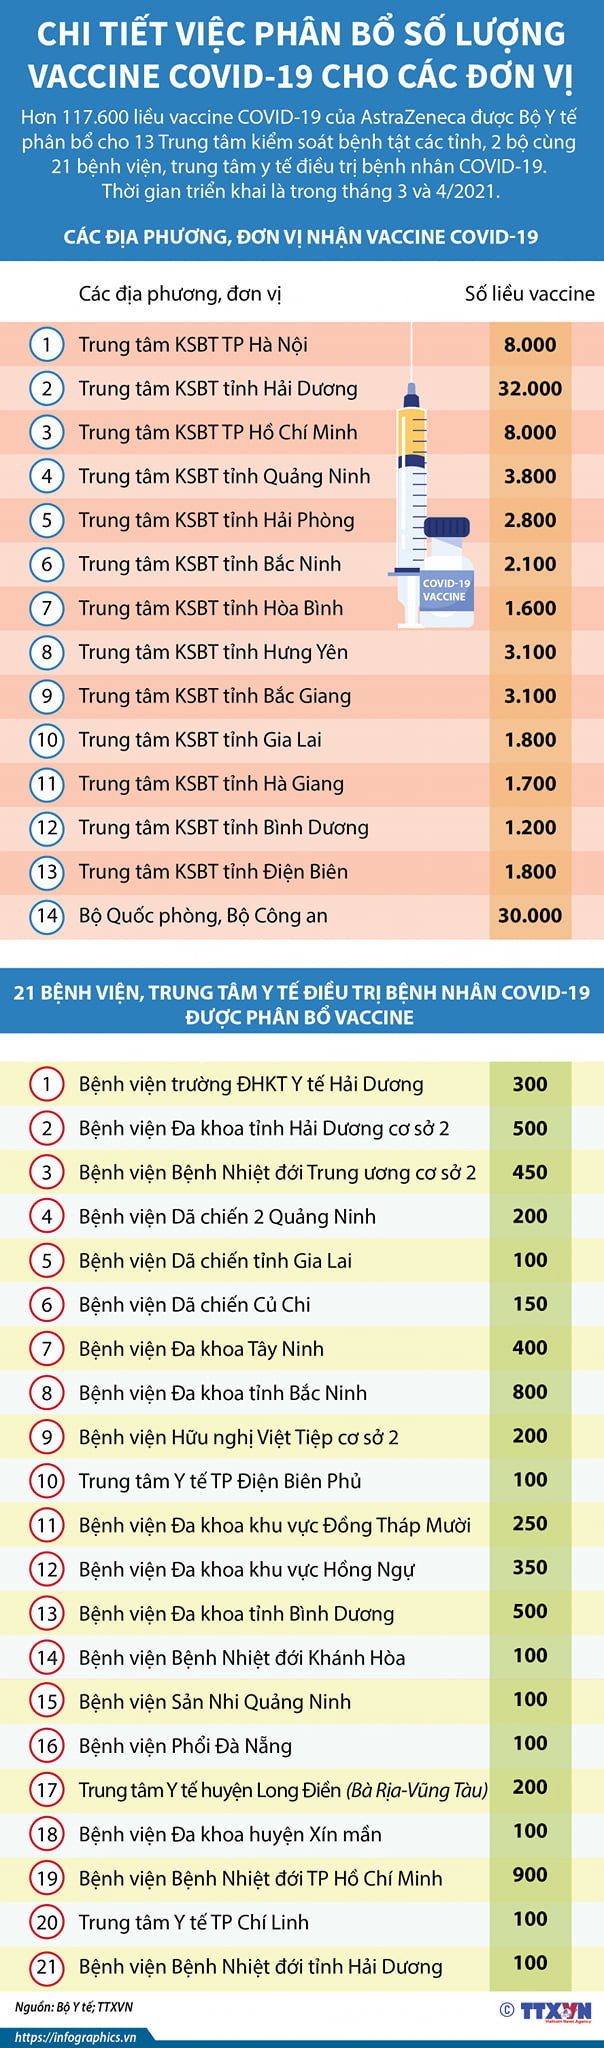 Sáng 8/3, khoảng 250 người đầu tiên ở Việt Nam tiêm vaccine COVID-19 - Ảnh 4.